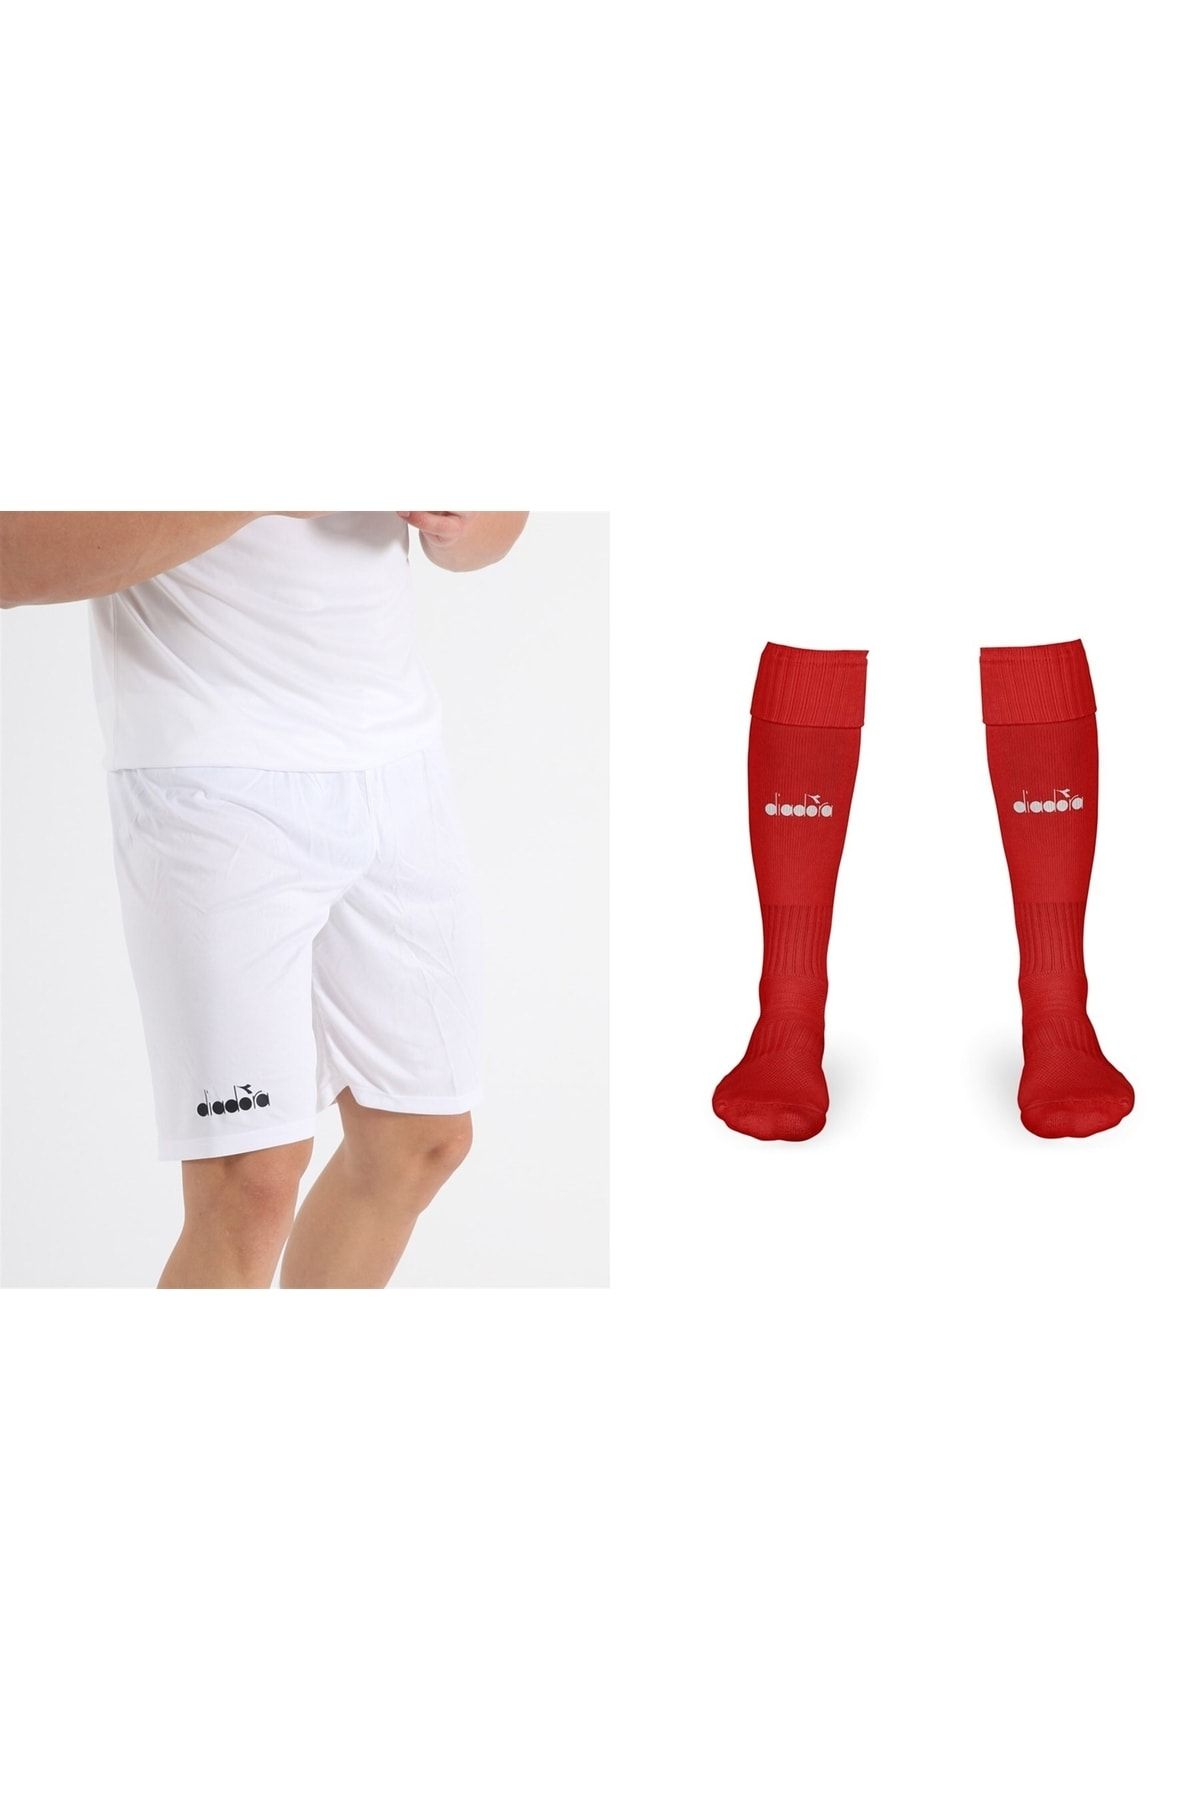 Diadora Beyaz Halı Saha Şortu - 40-45 Uzun Futbol Çorabı - Ddset-ant001